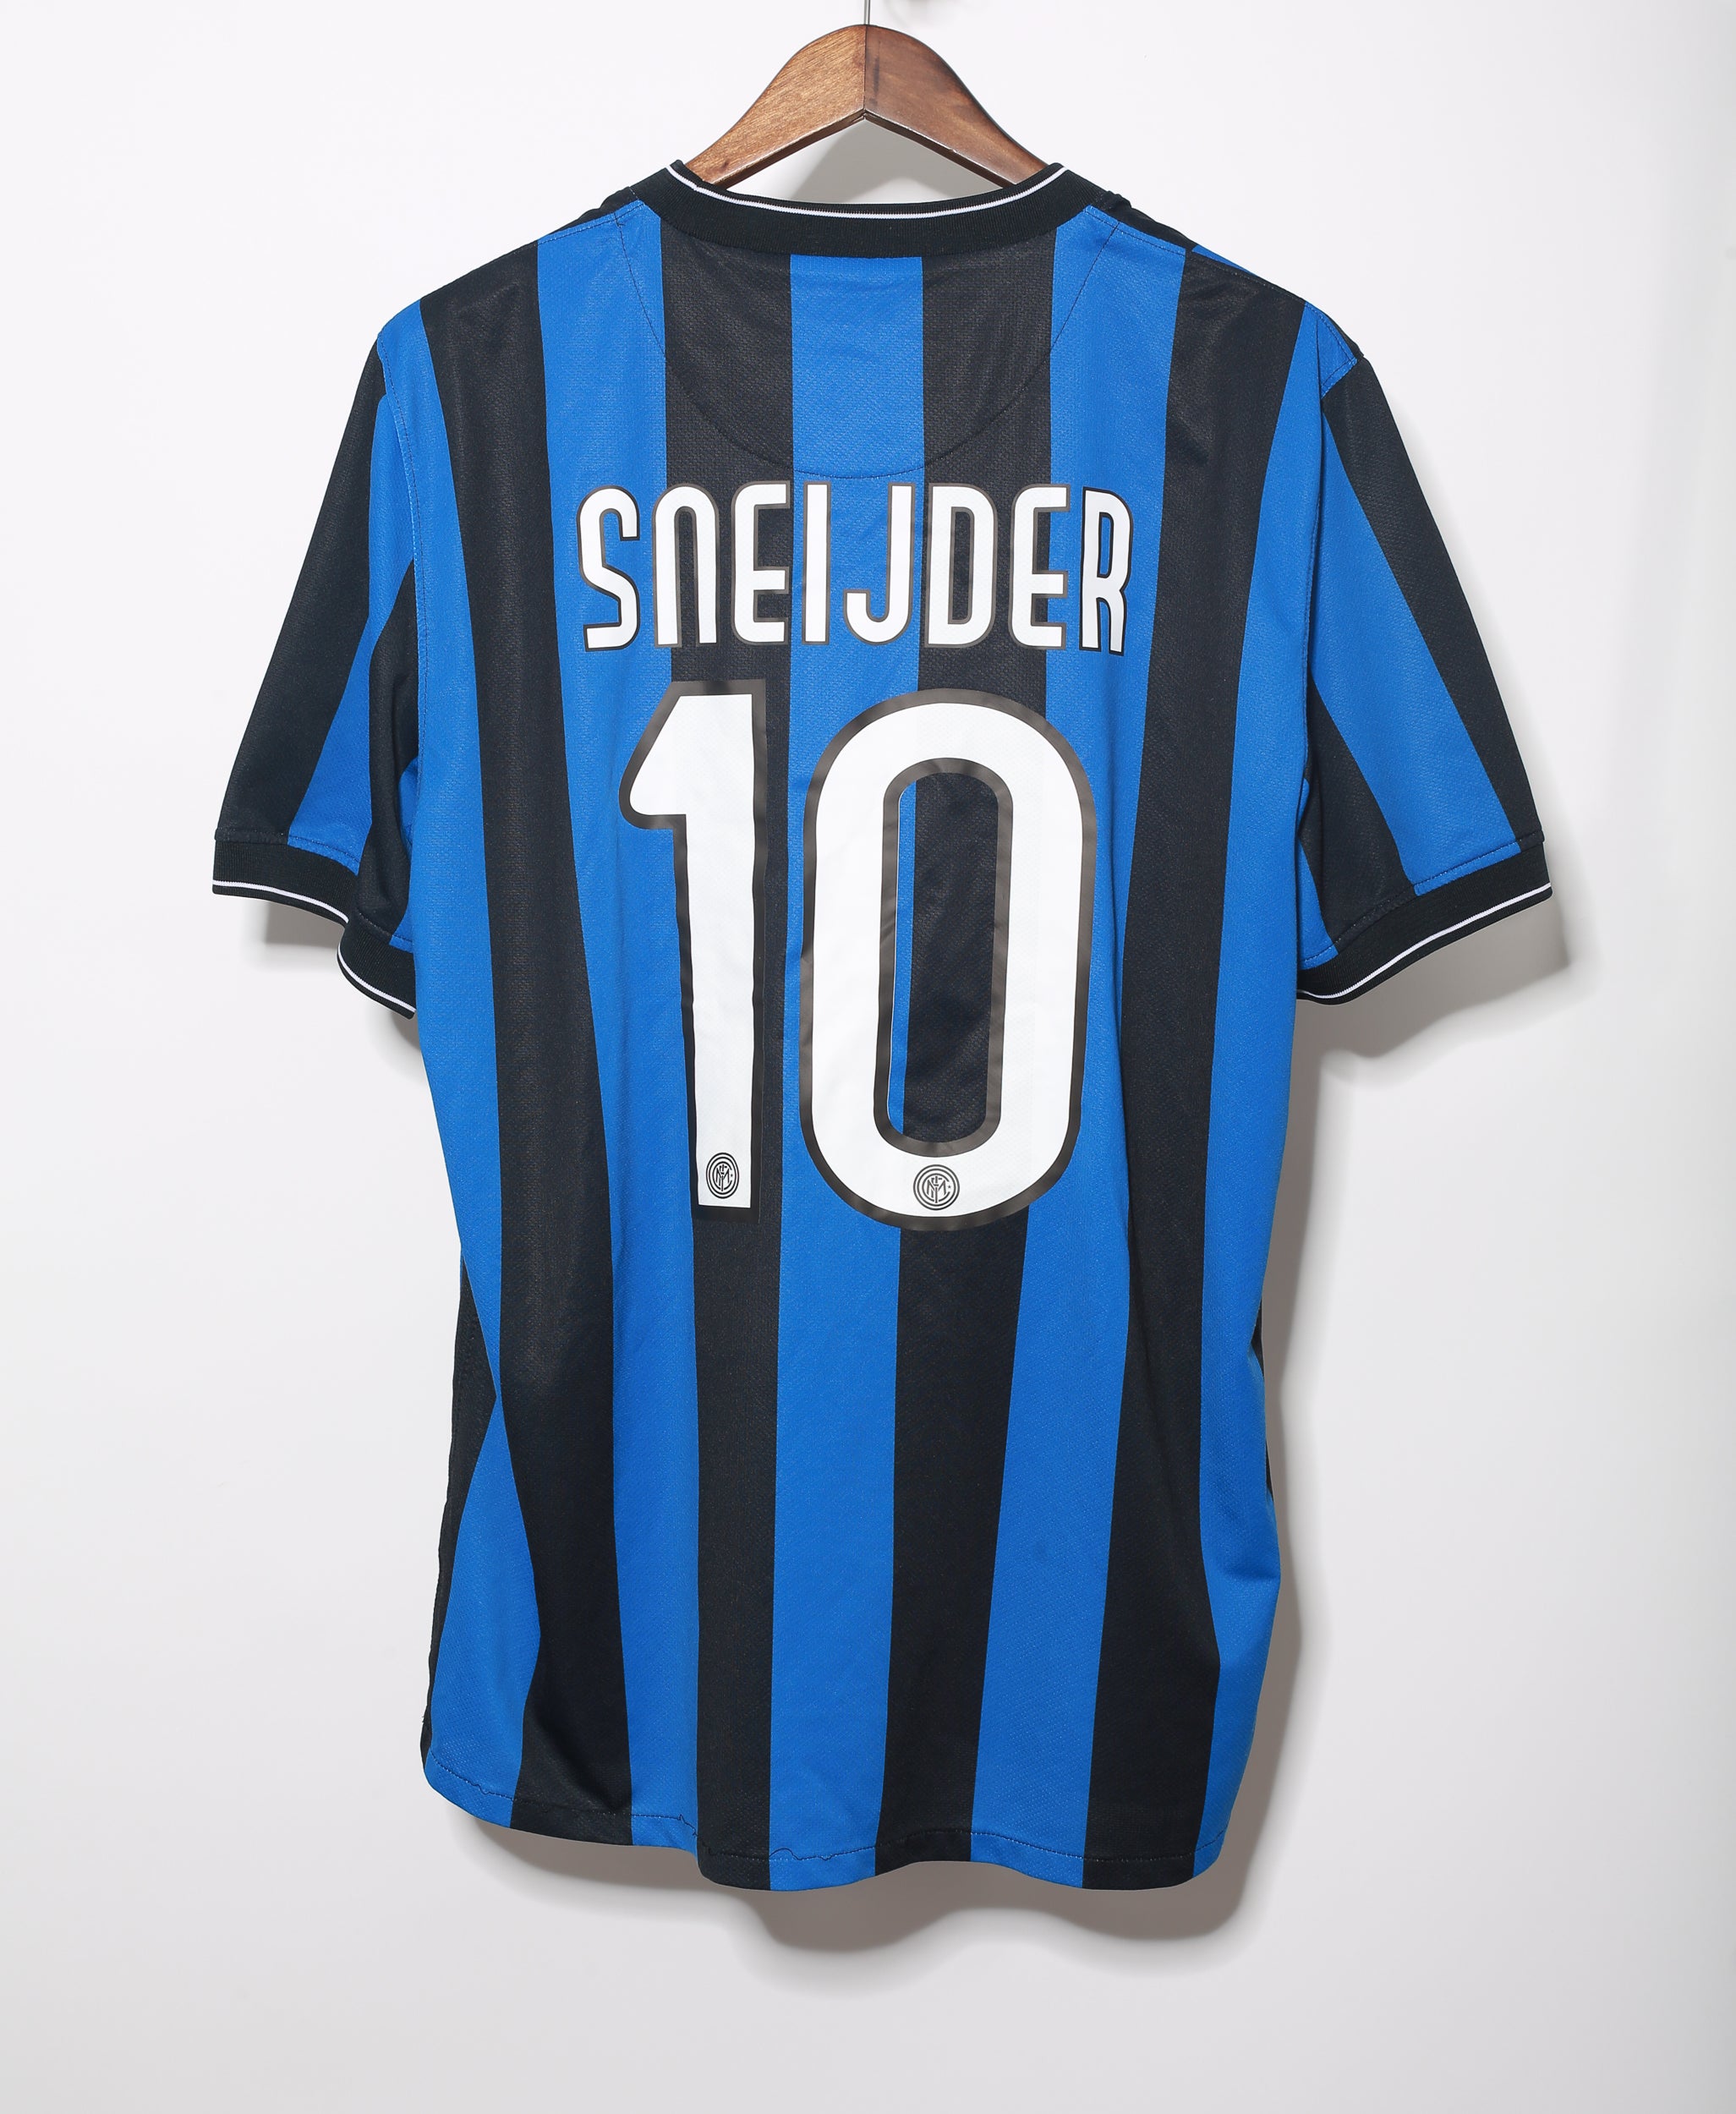 licentie kleding stof Ontwijken Inter Milan 2009-10 Sneijder Home Kit (XL) – Saturdays Football